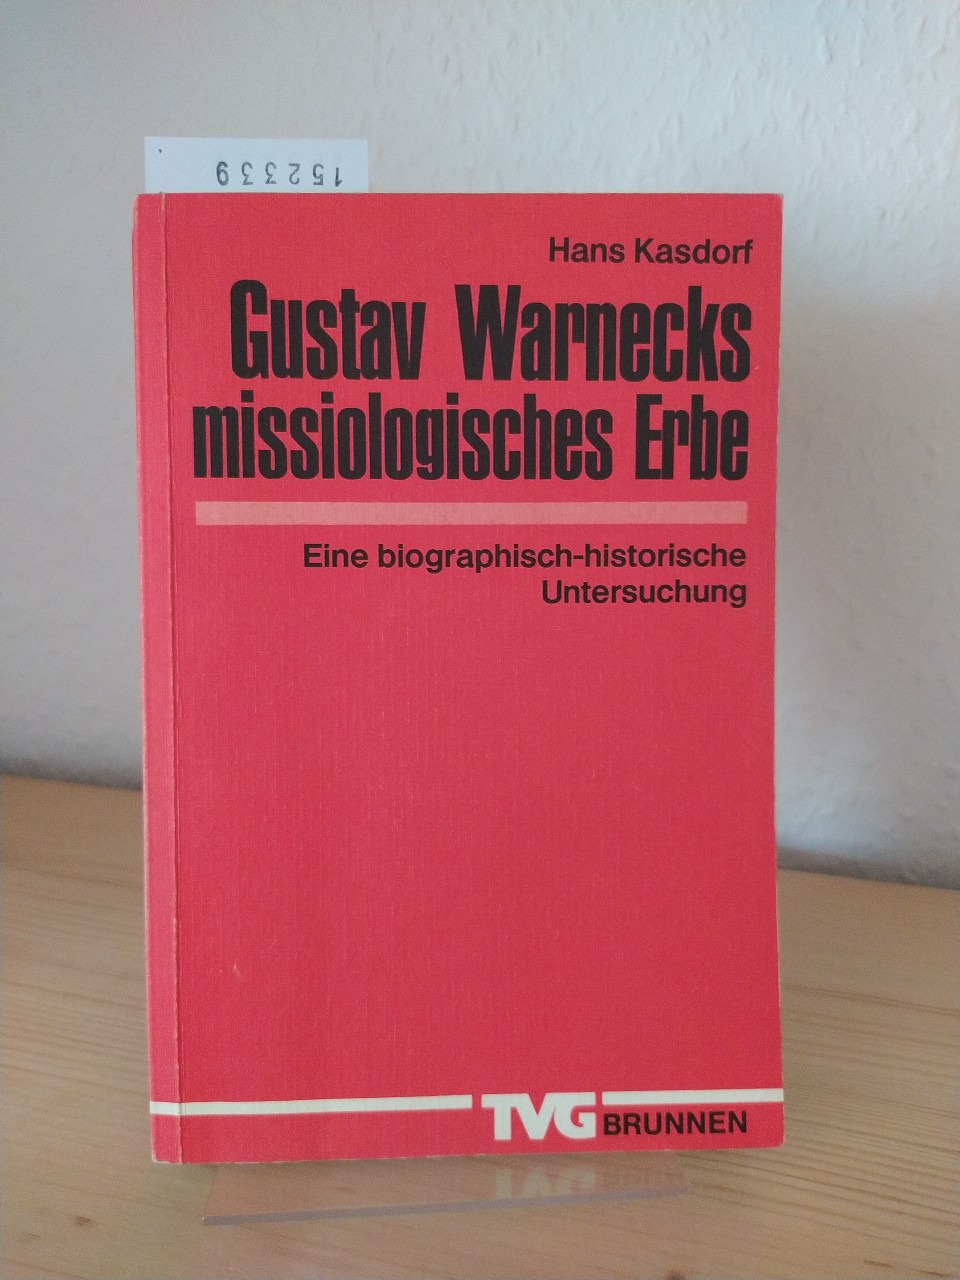 Gustav Warnecks missiologisches Erbe. Eine biographisch-historische Untersuchung. [Von Hans Kasdorf]. - Kasdorf, Hans